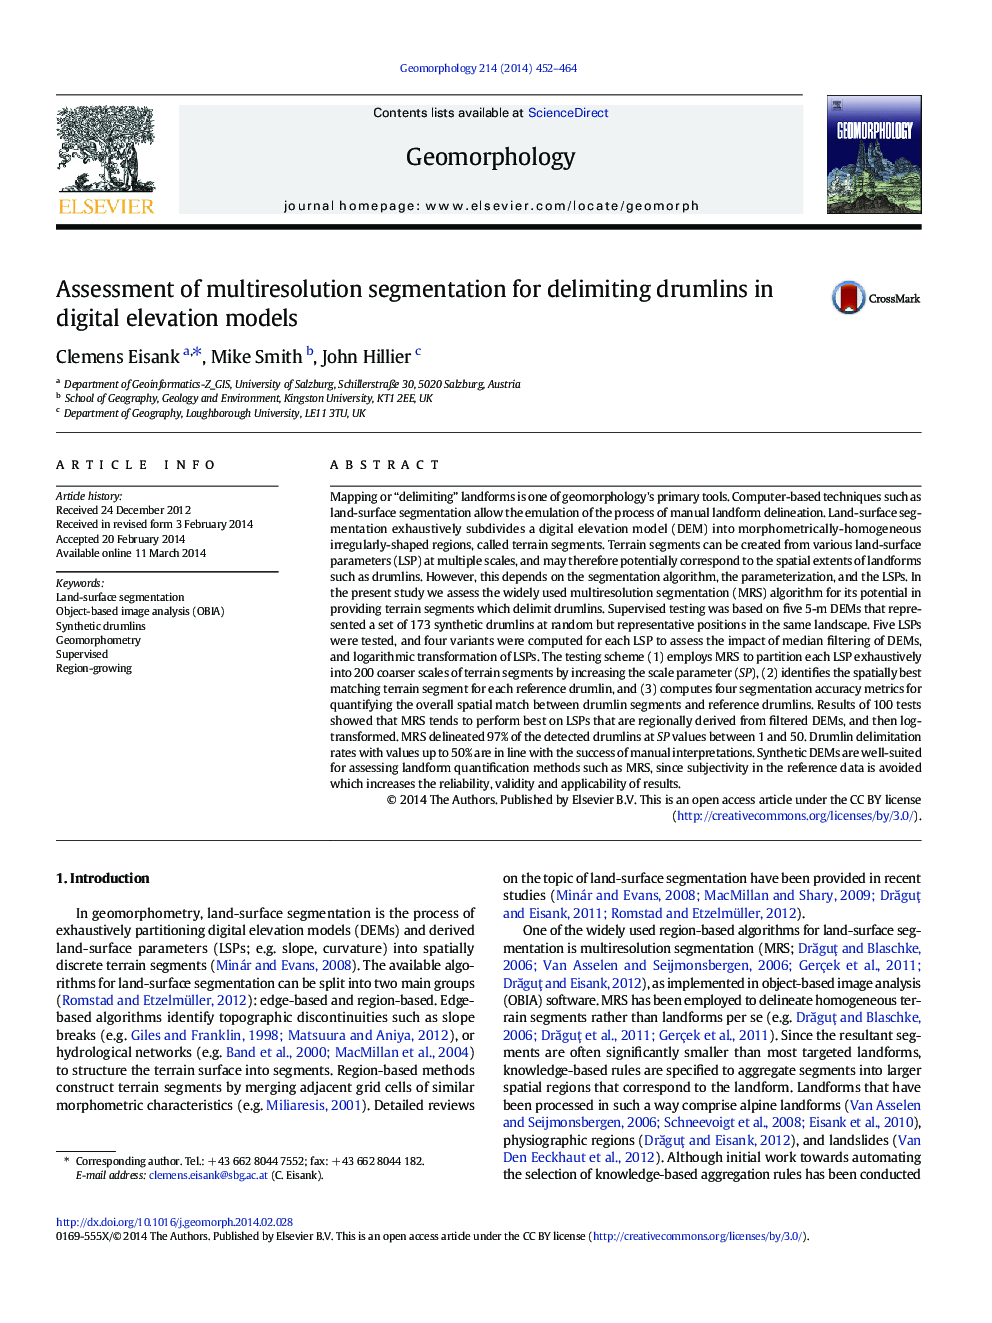 Assessment of multiresolution segmentation for delimiting drumlins in digital elevation models